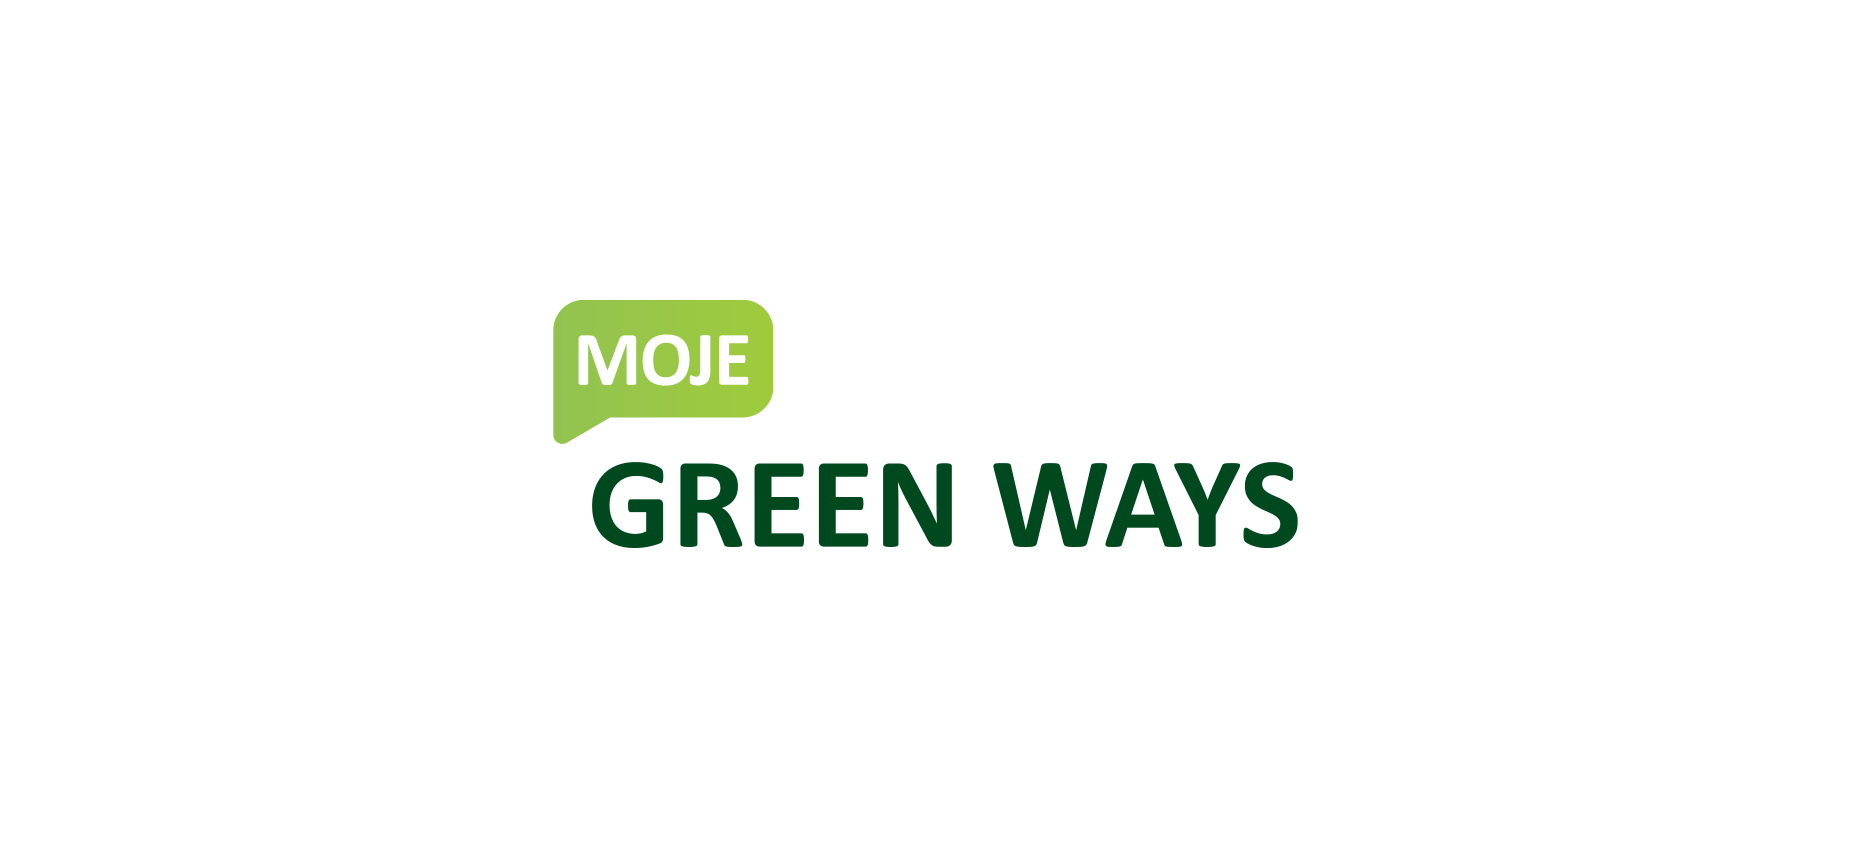 greenways-logo1.png